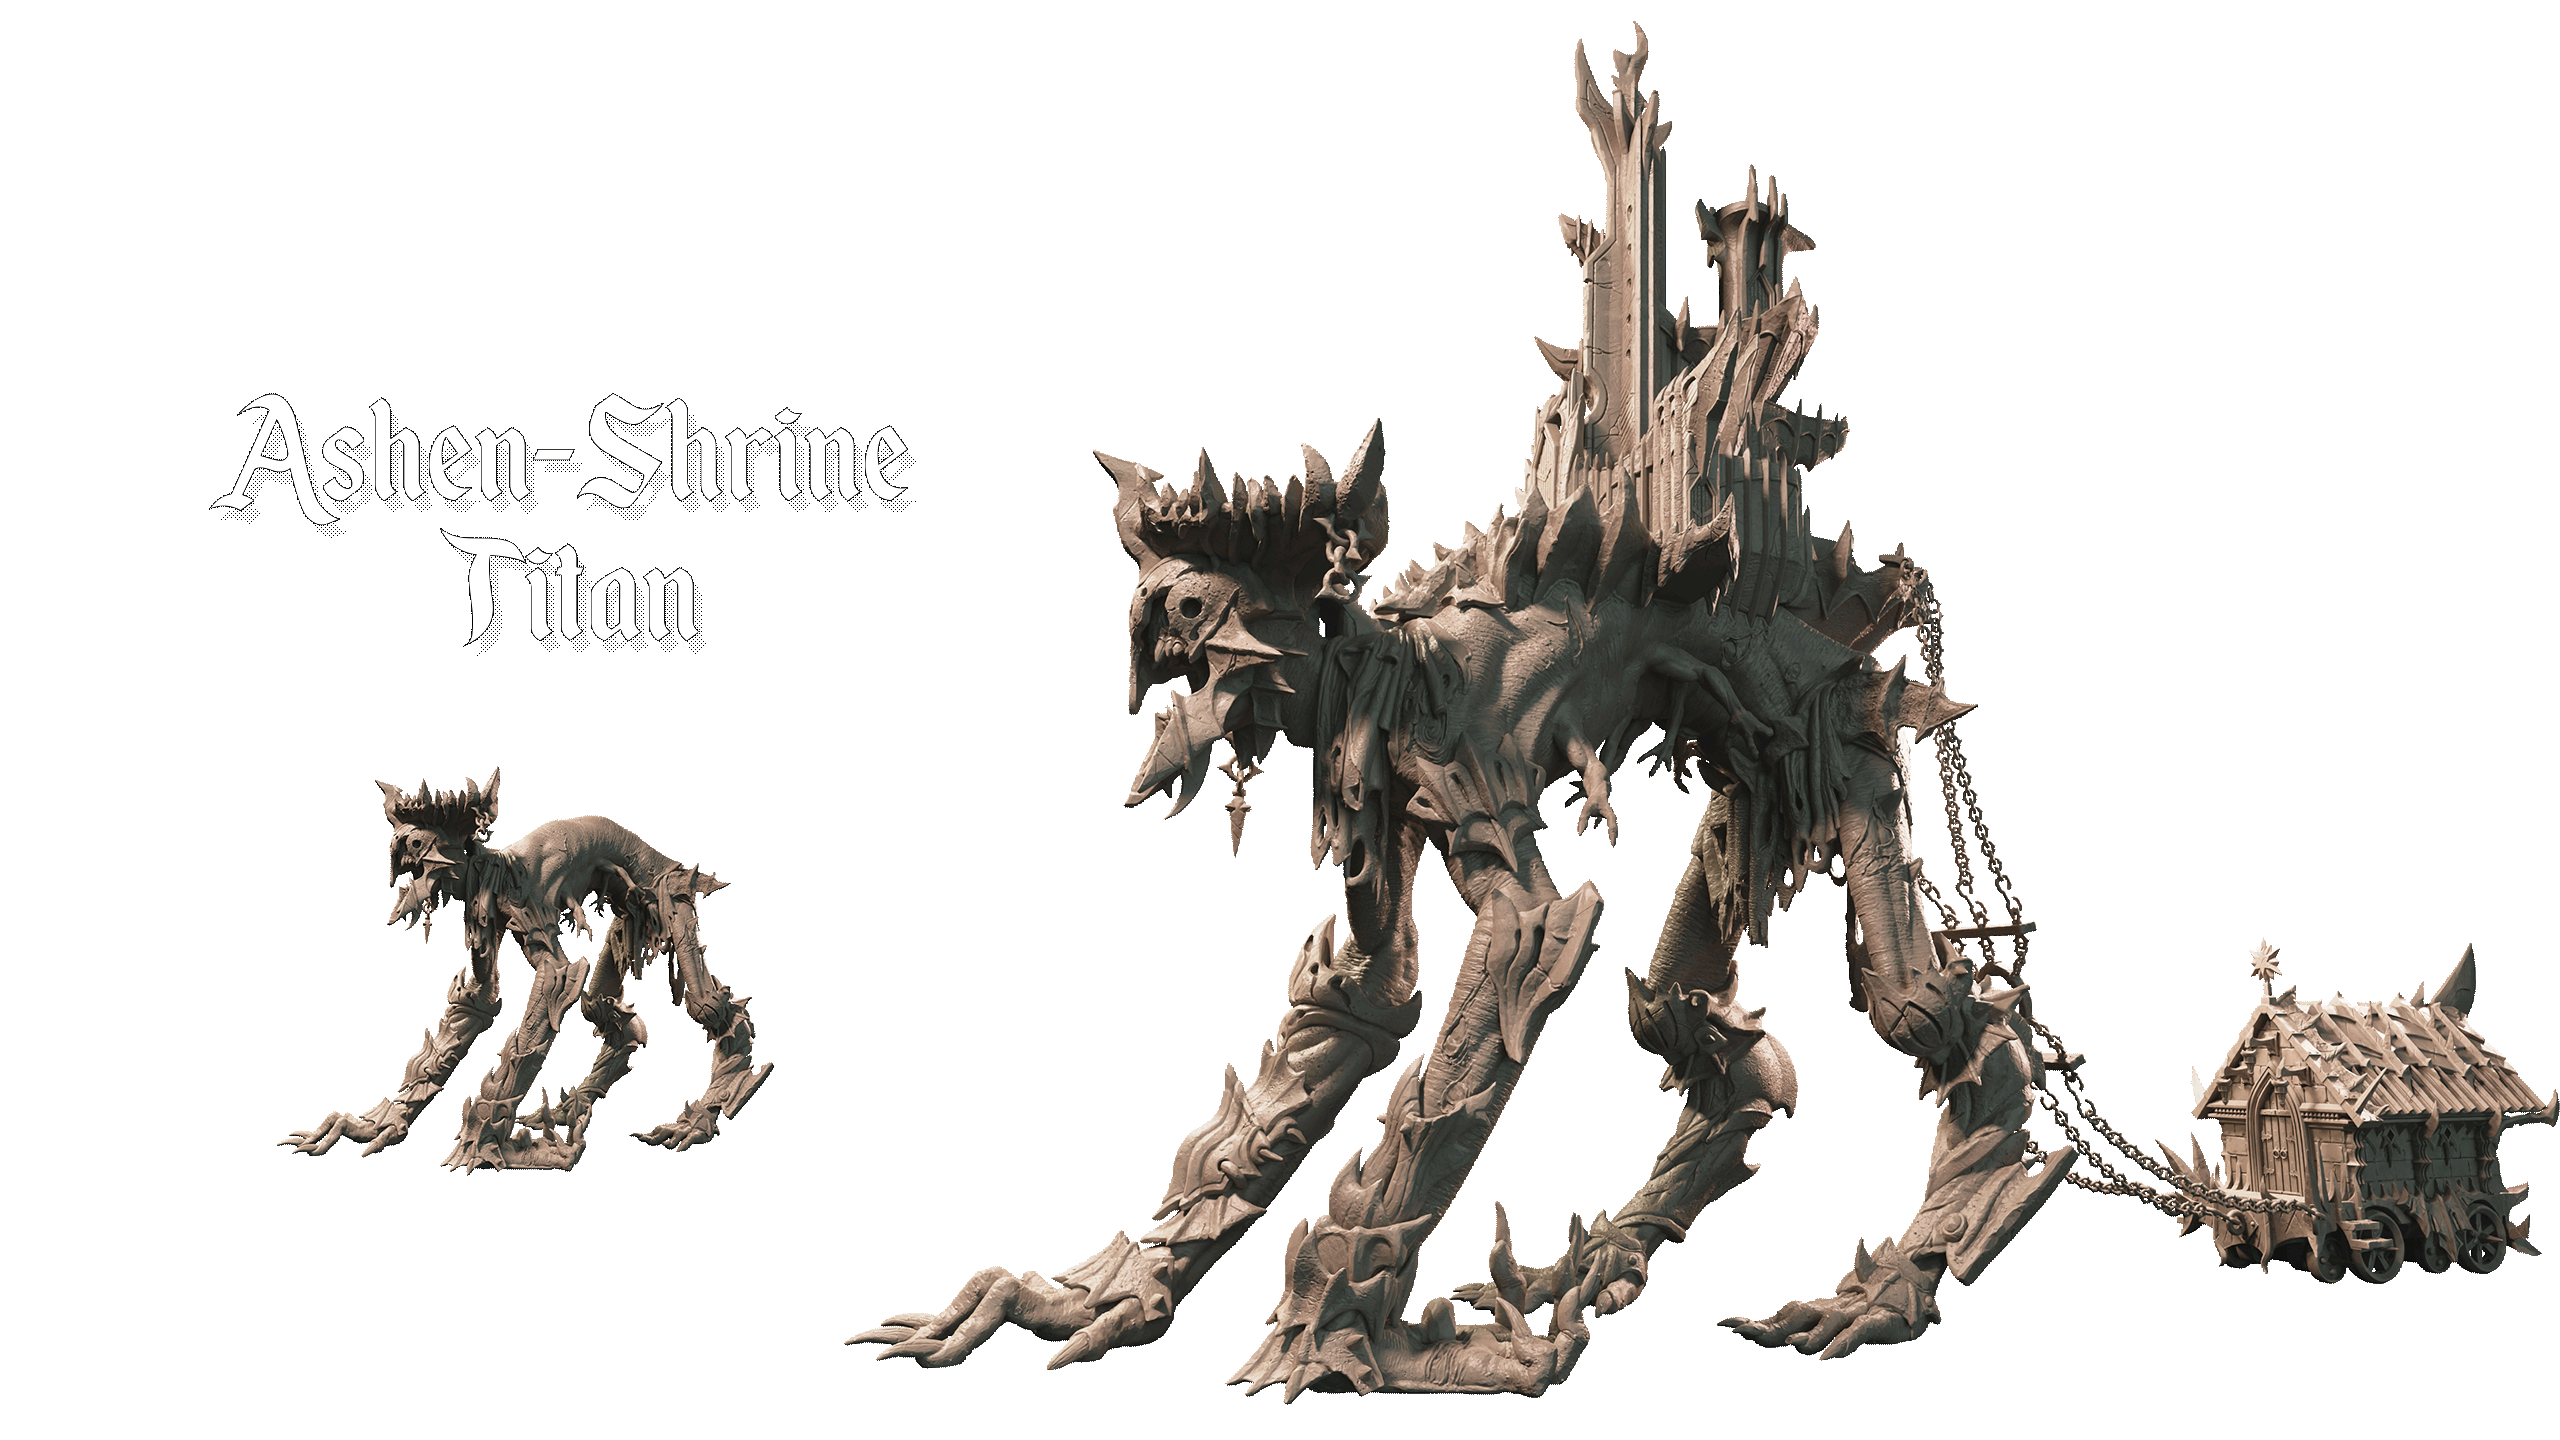 Ashen-Shrine Titan